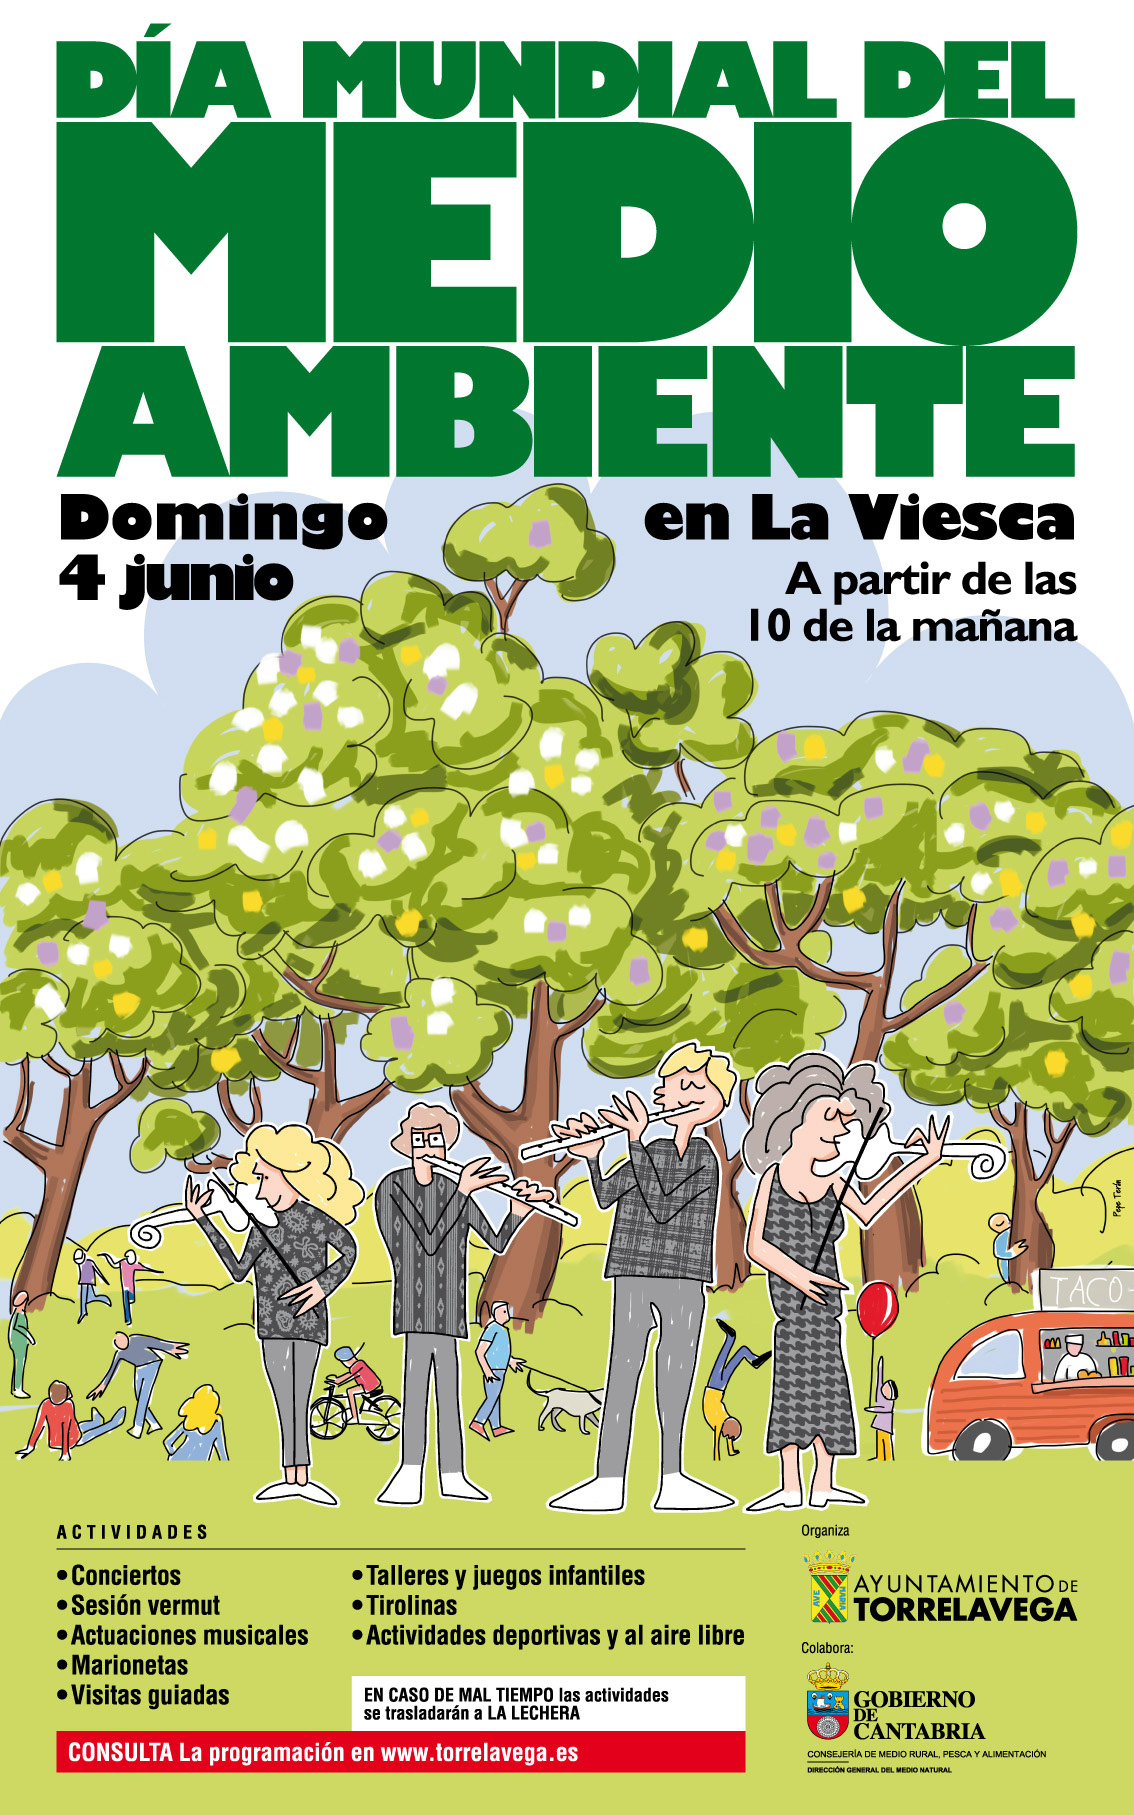 Torrelavega celebrará el Día Mundial del Medio Ambiente por todo lo alto